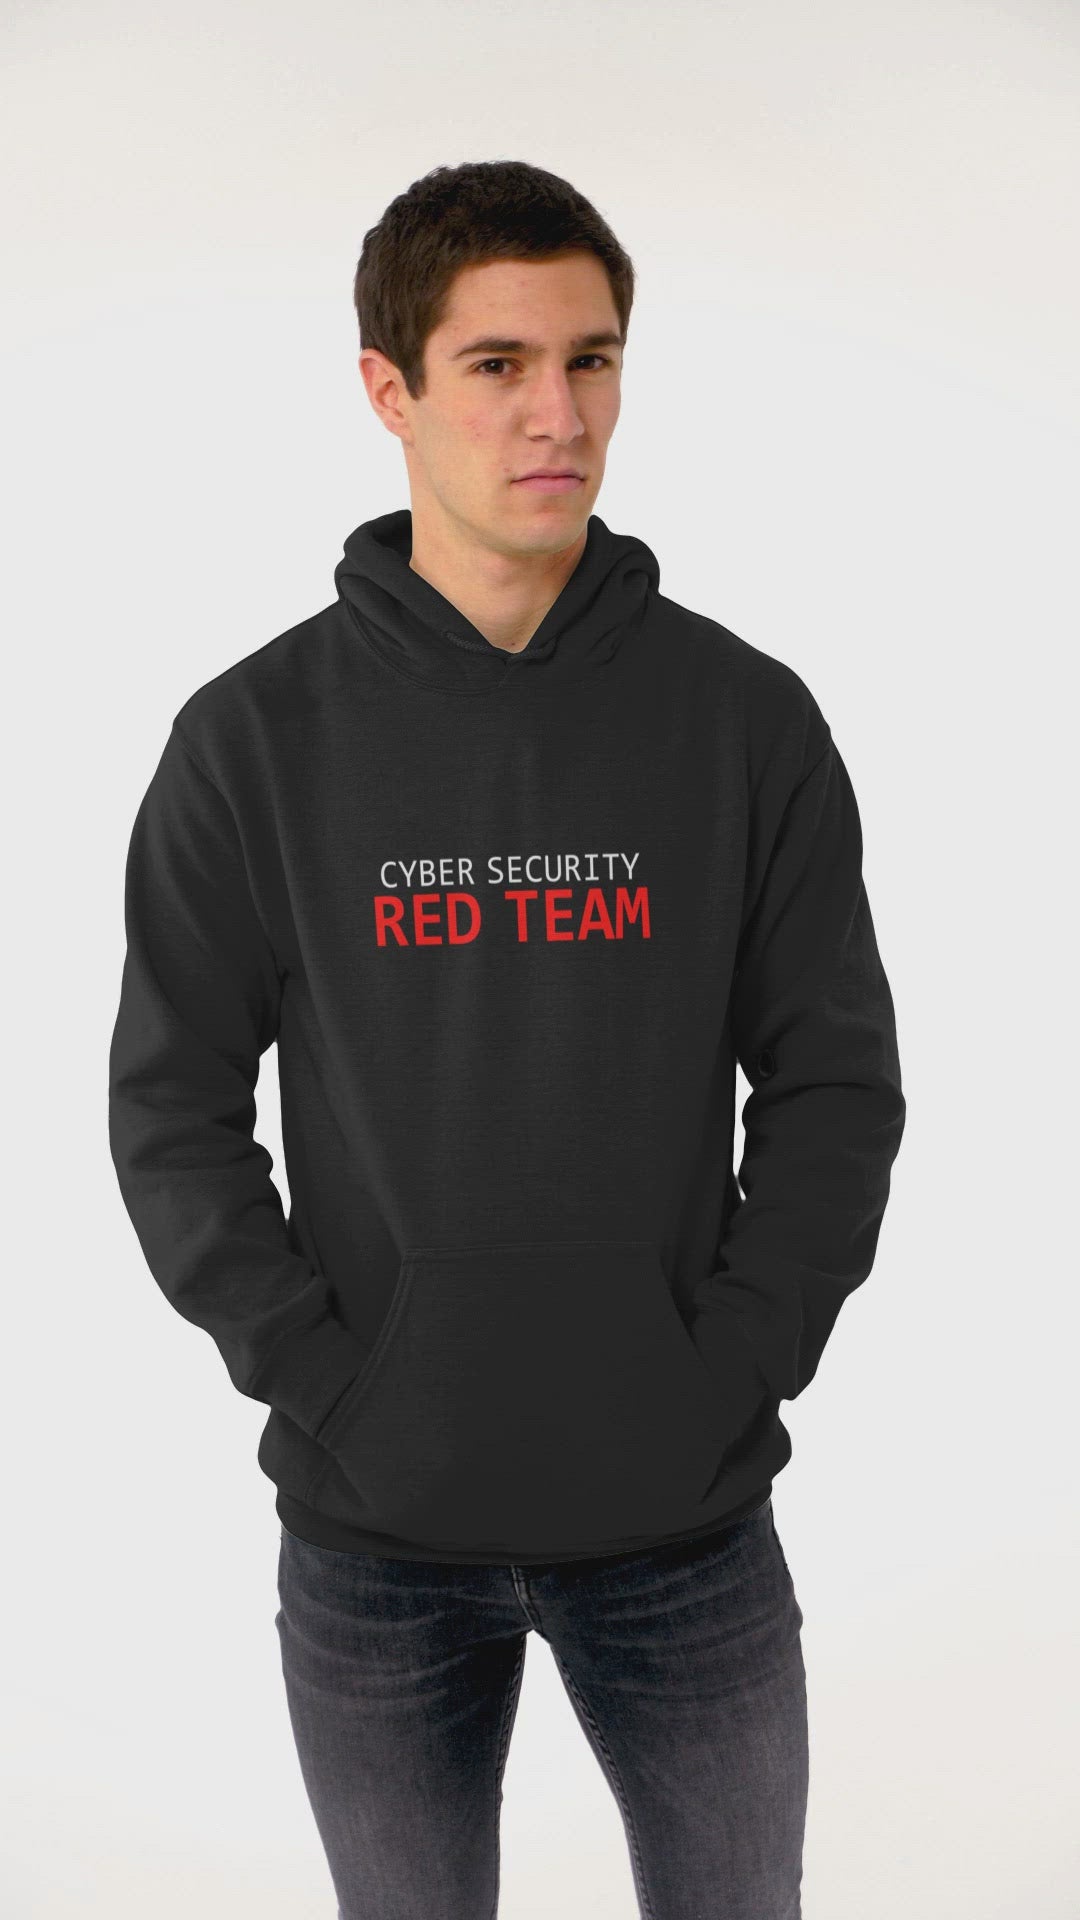 Cyber security red team - Unisex Hoodie